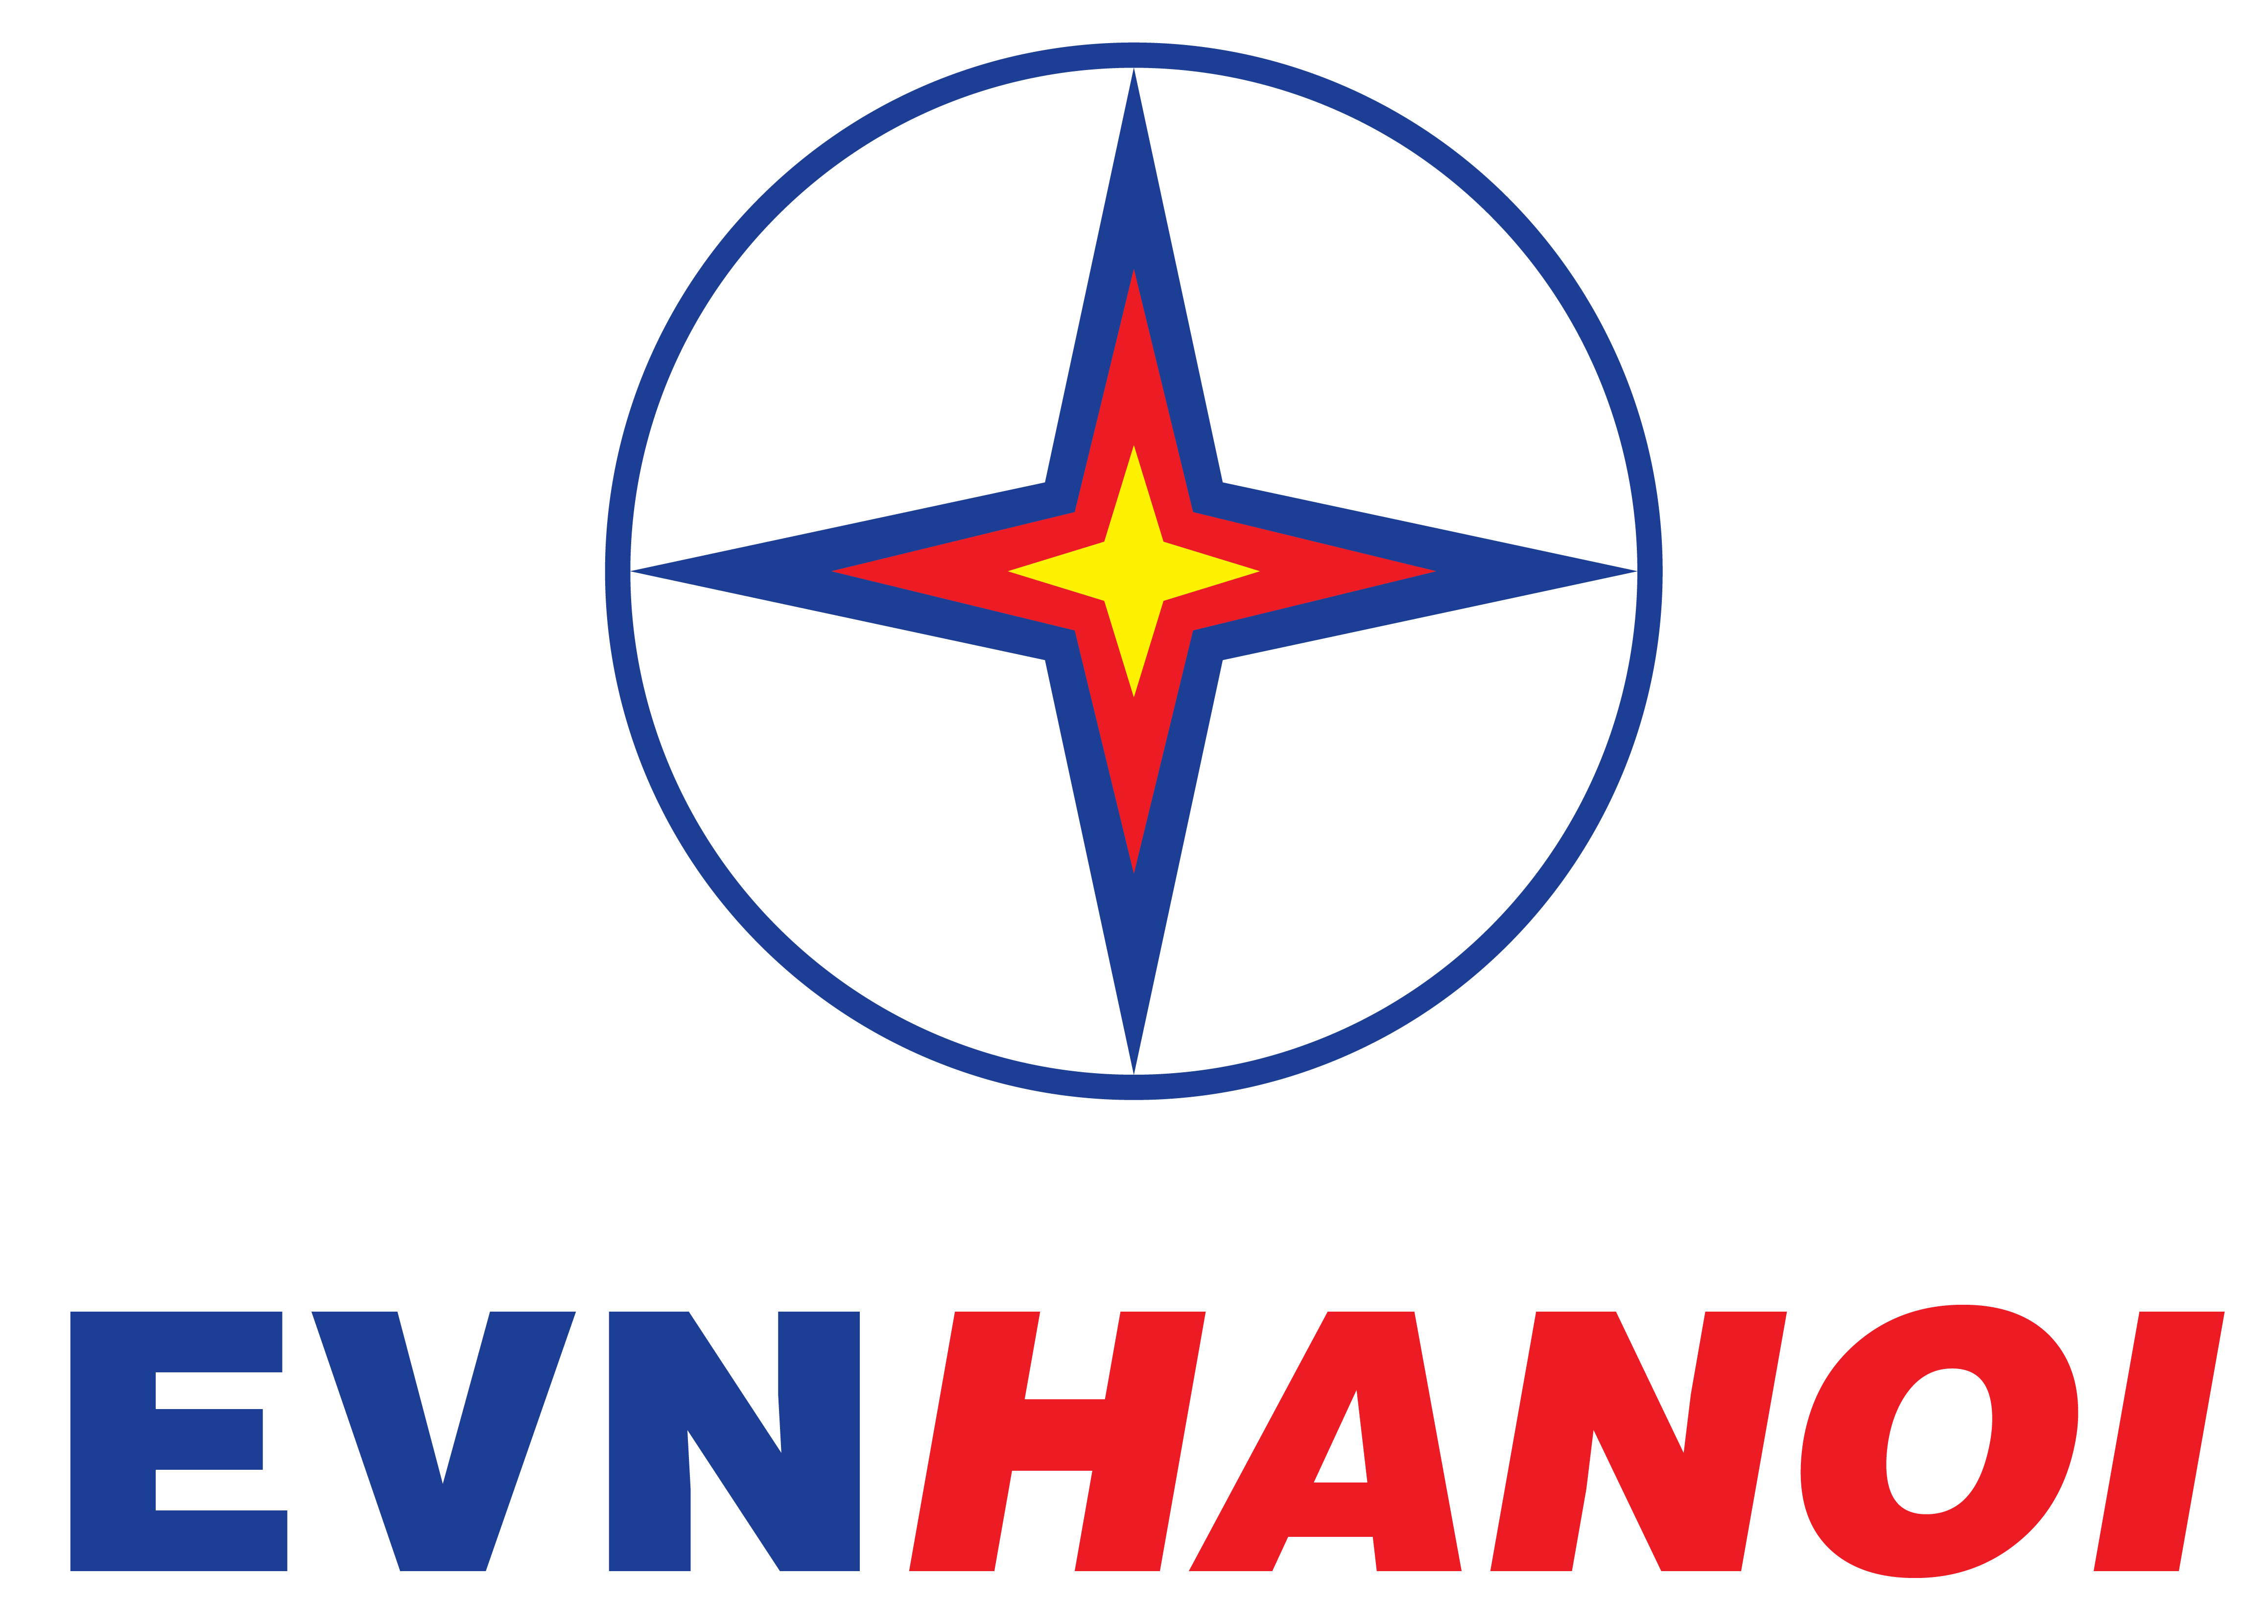 EVN Hanoi